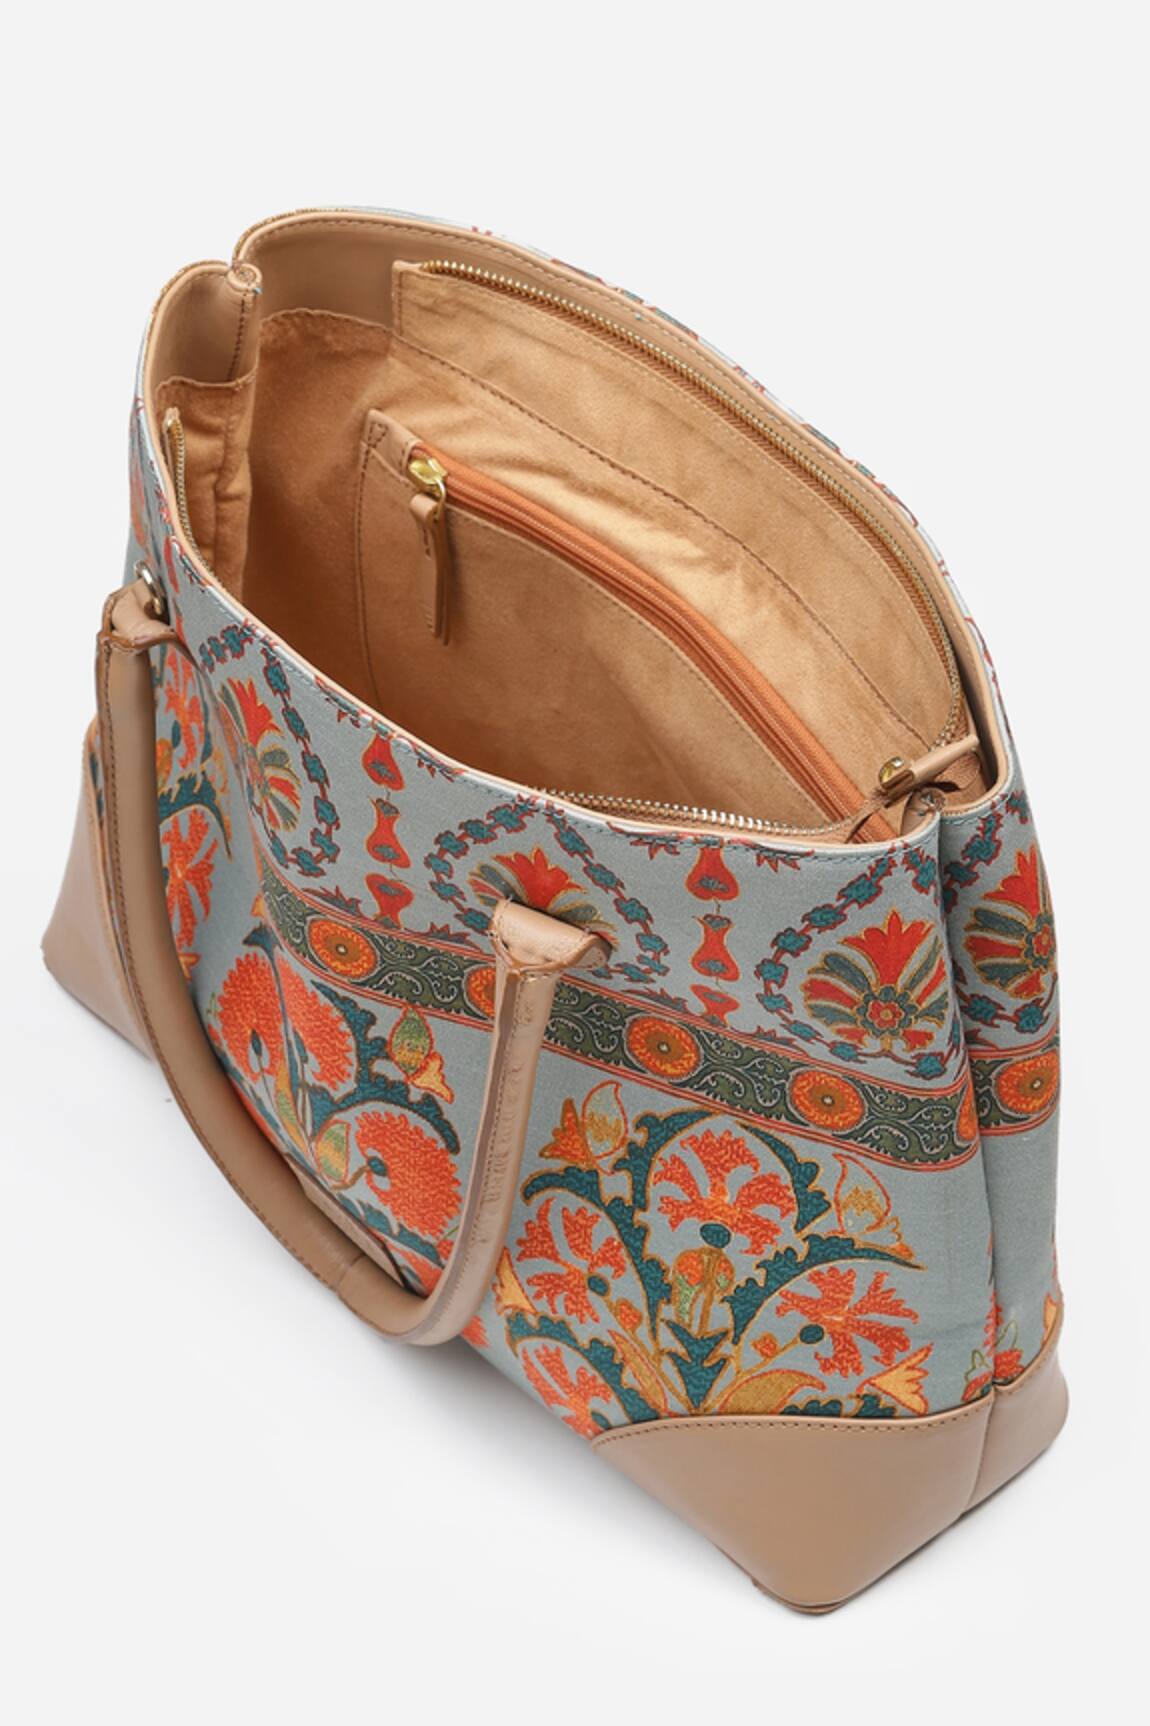 RITU KUMAR Tan Floral Print Tote Bag for Women